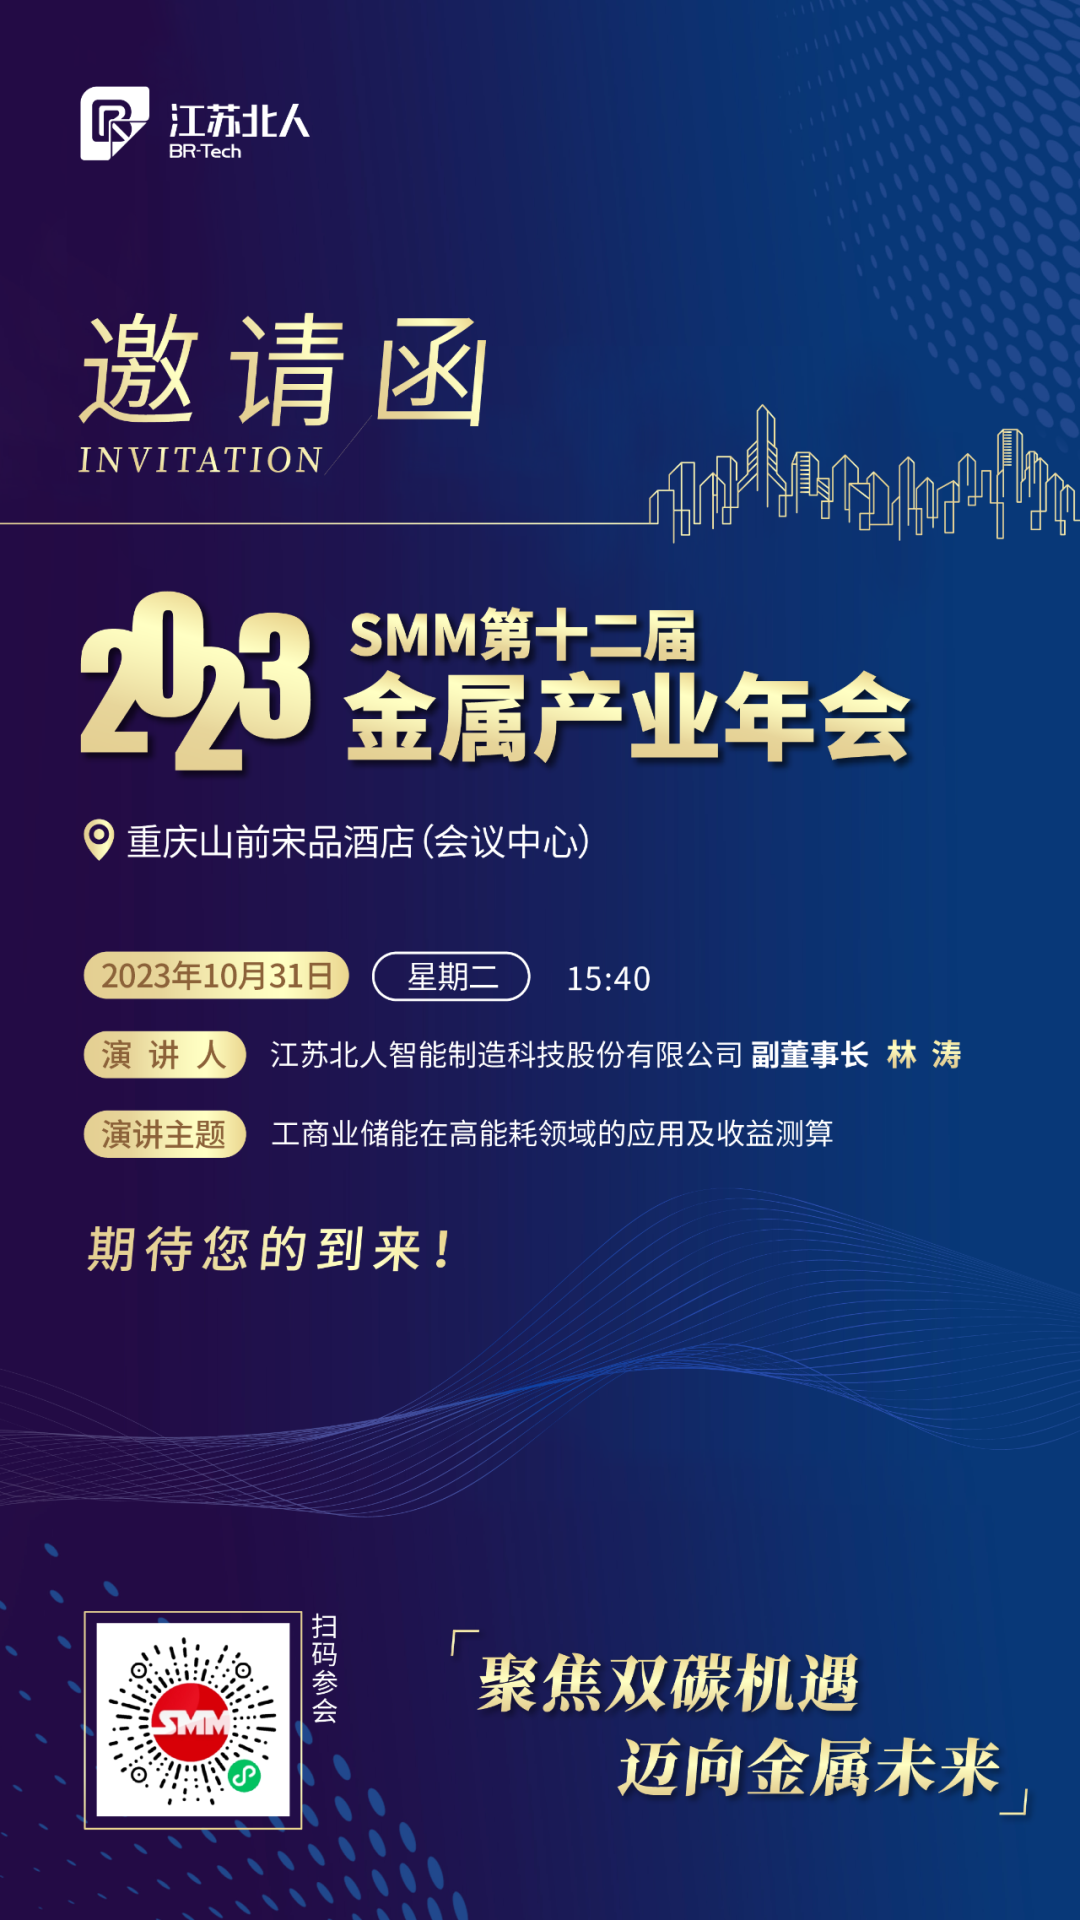 江苏北人邀您共赴2023SMM（第十二届）金属产业年会